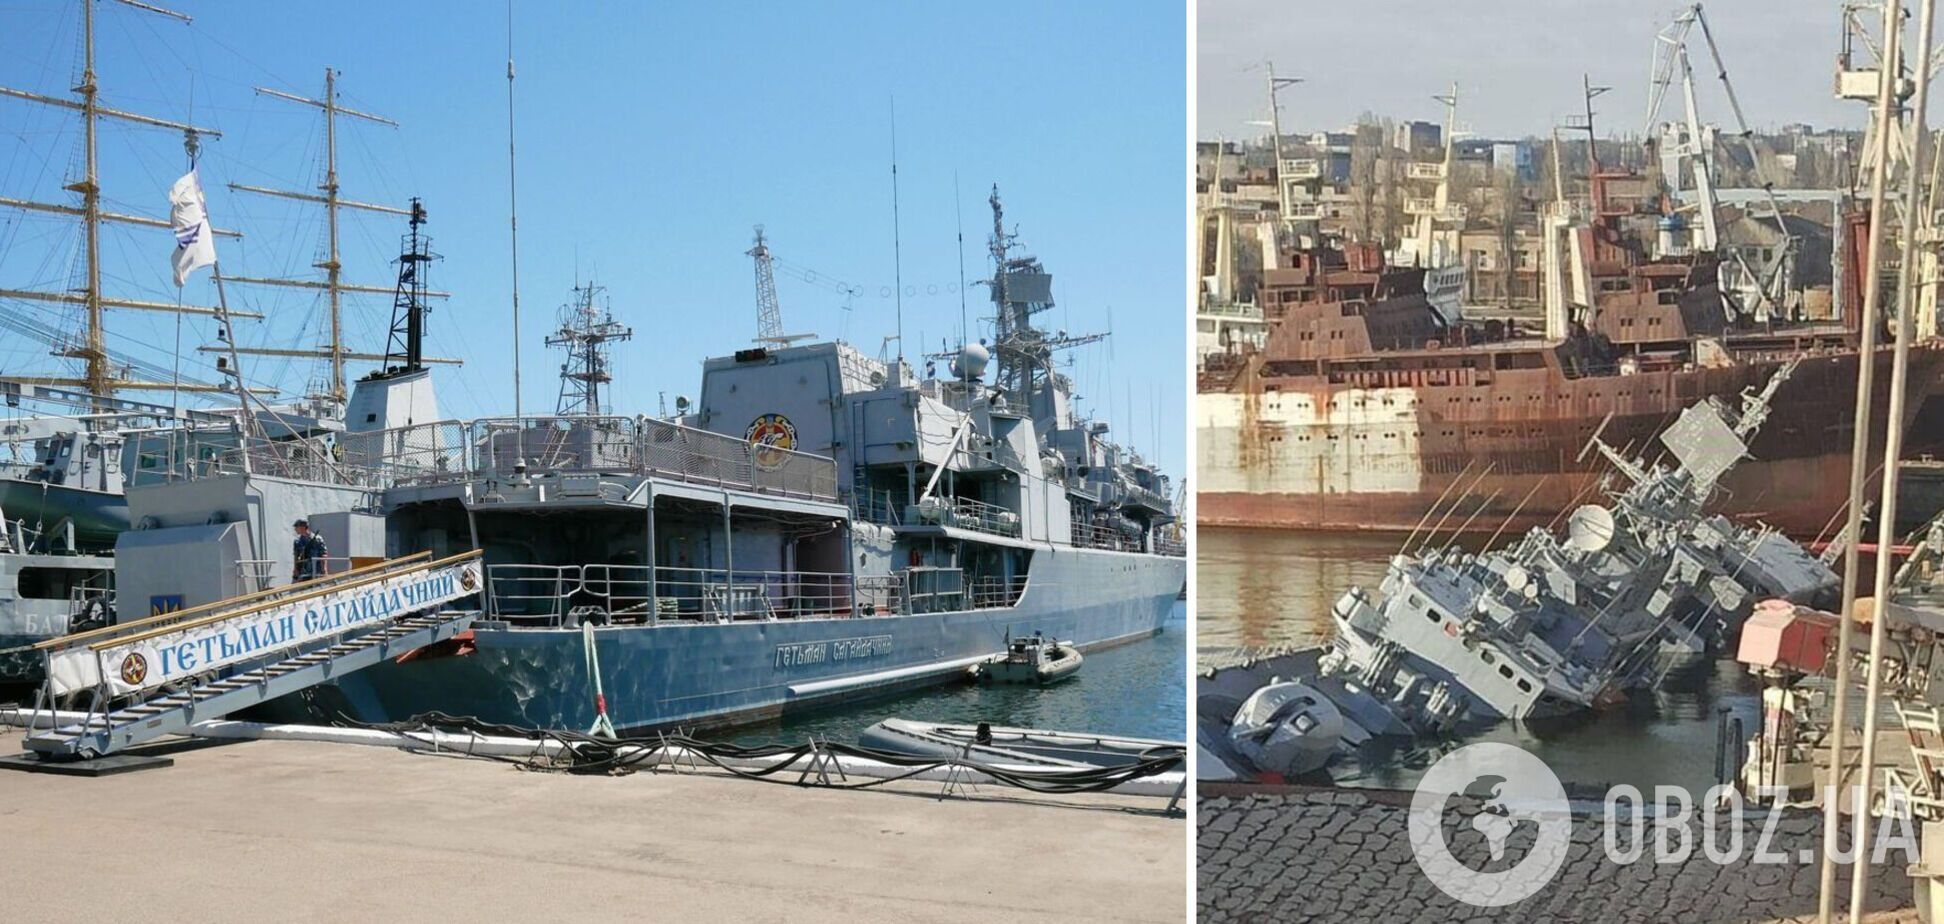 Флагман ВМС України 'Гетьман Сагайдачний' затоплено. Фото